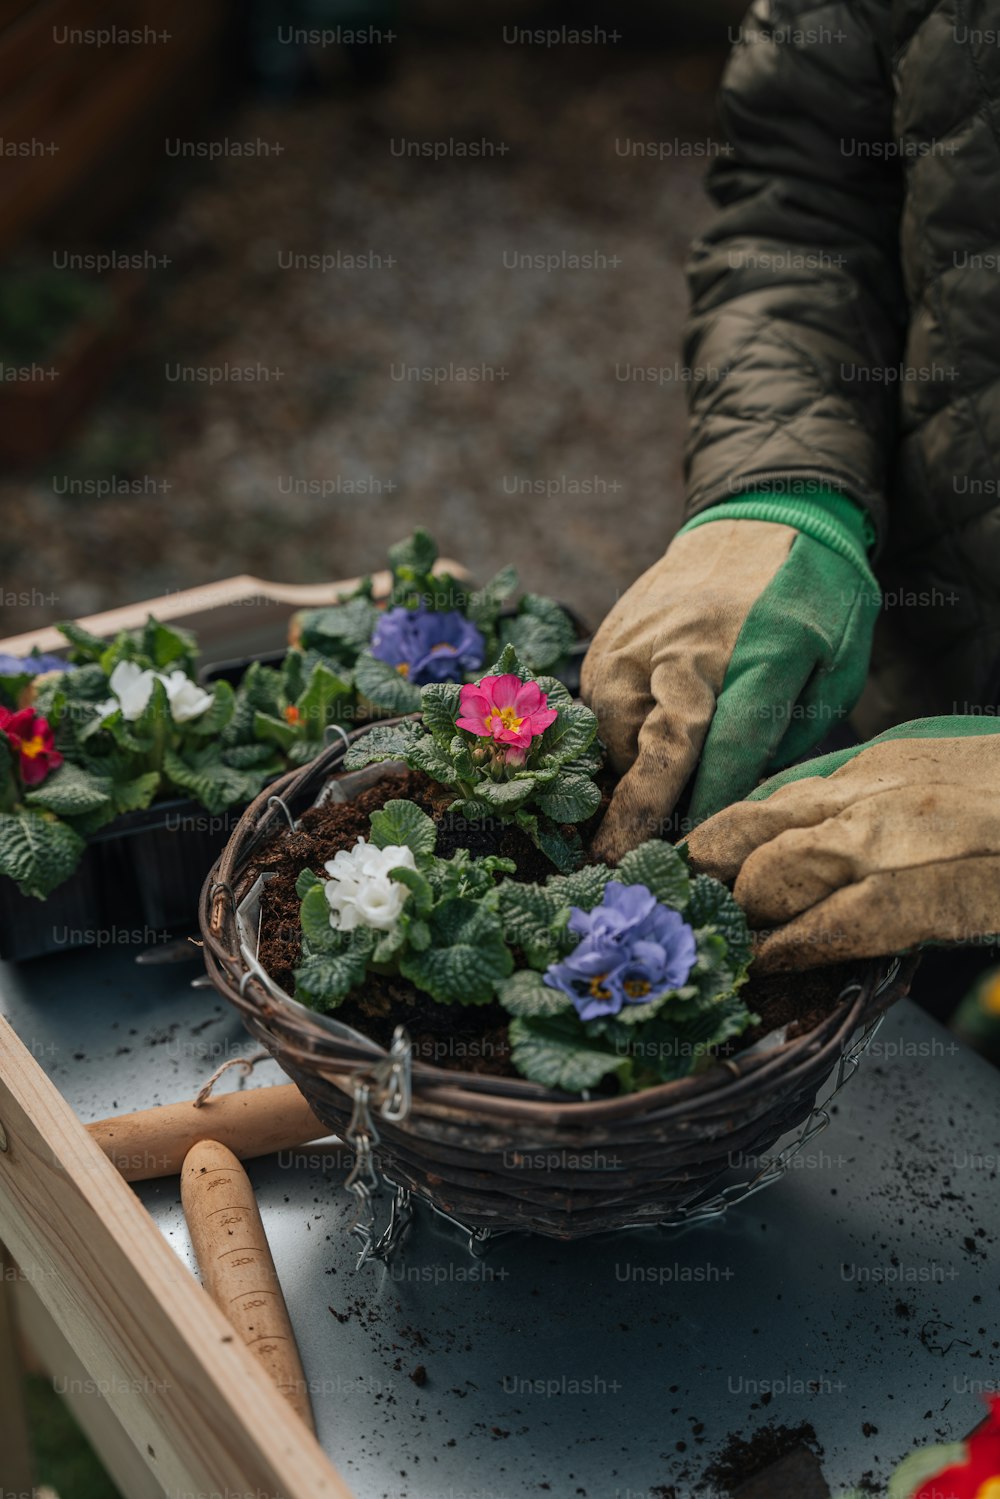 Eine Person, die Handschuhe und Gartenhandschuhe trägt, legt Blumen in einen Korb